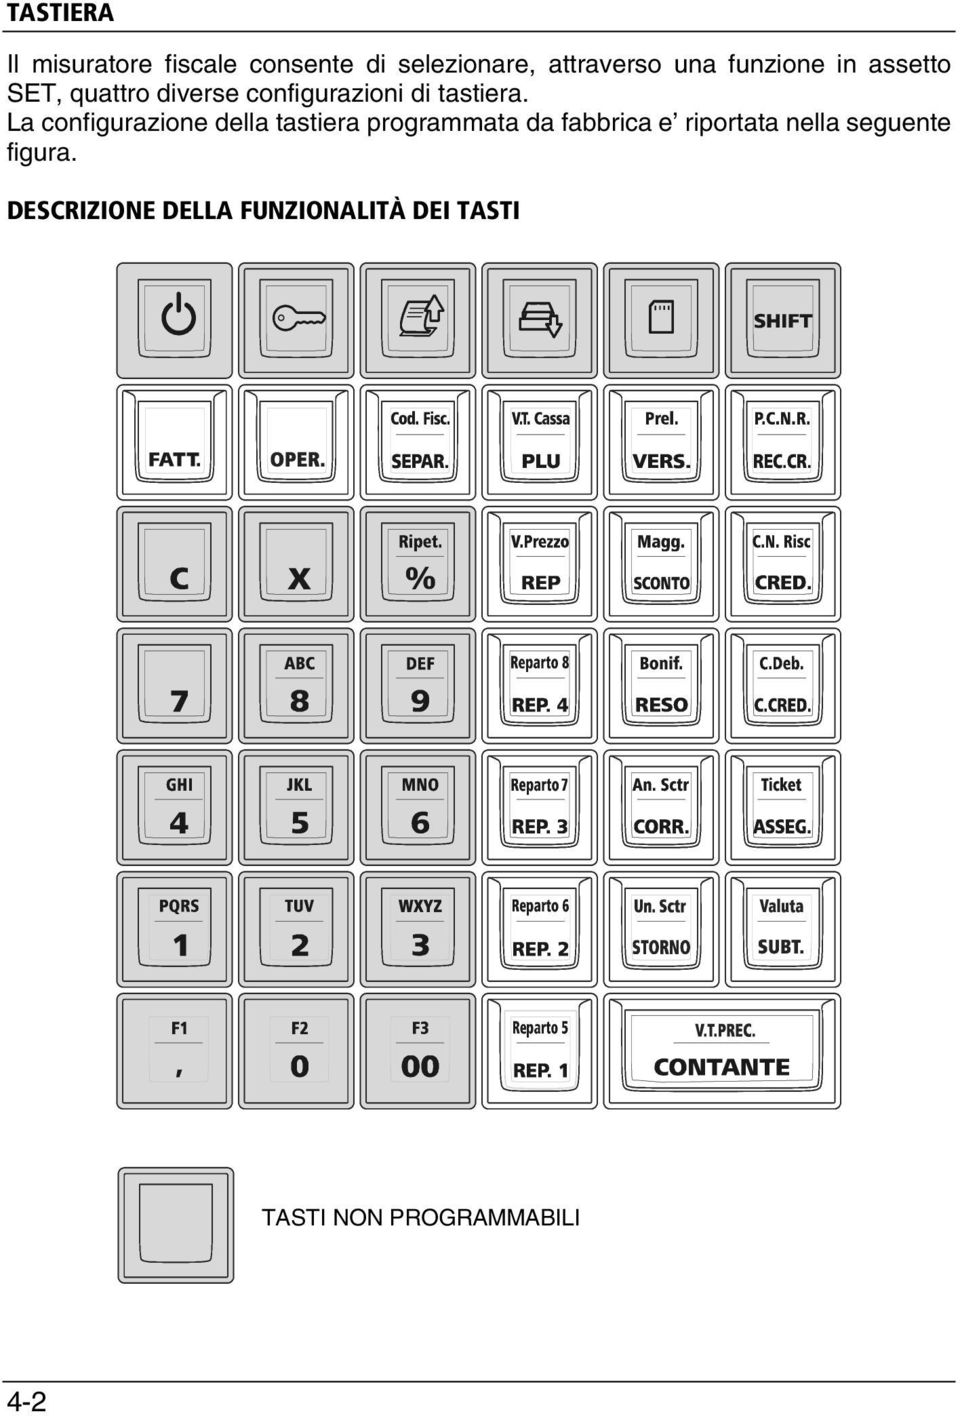 La configurazione della tastiera programmata da fabbrica e riportata nella